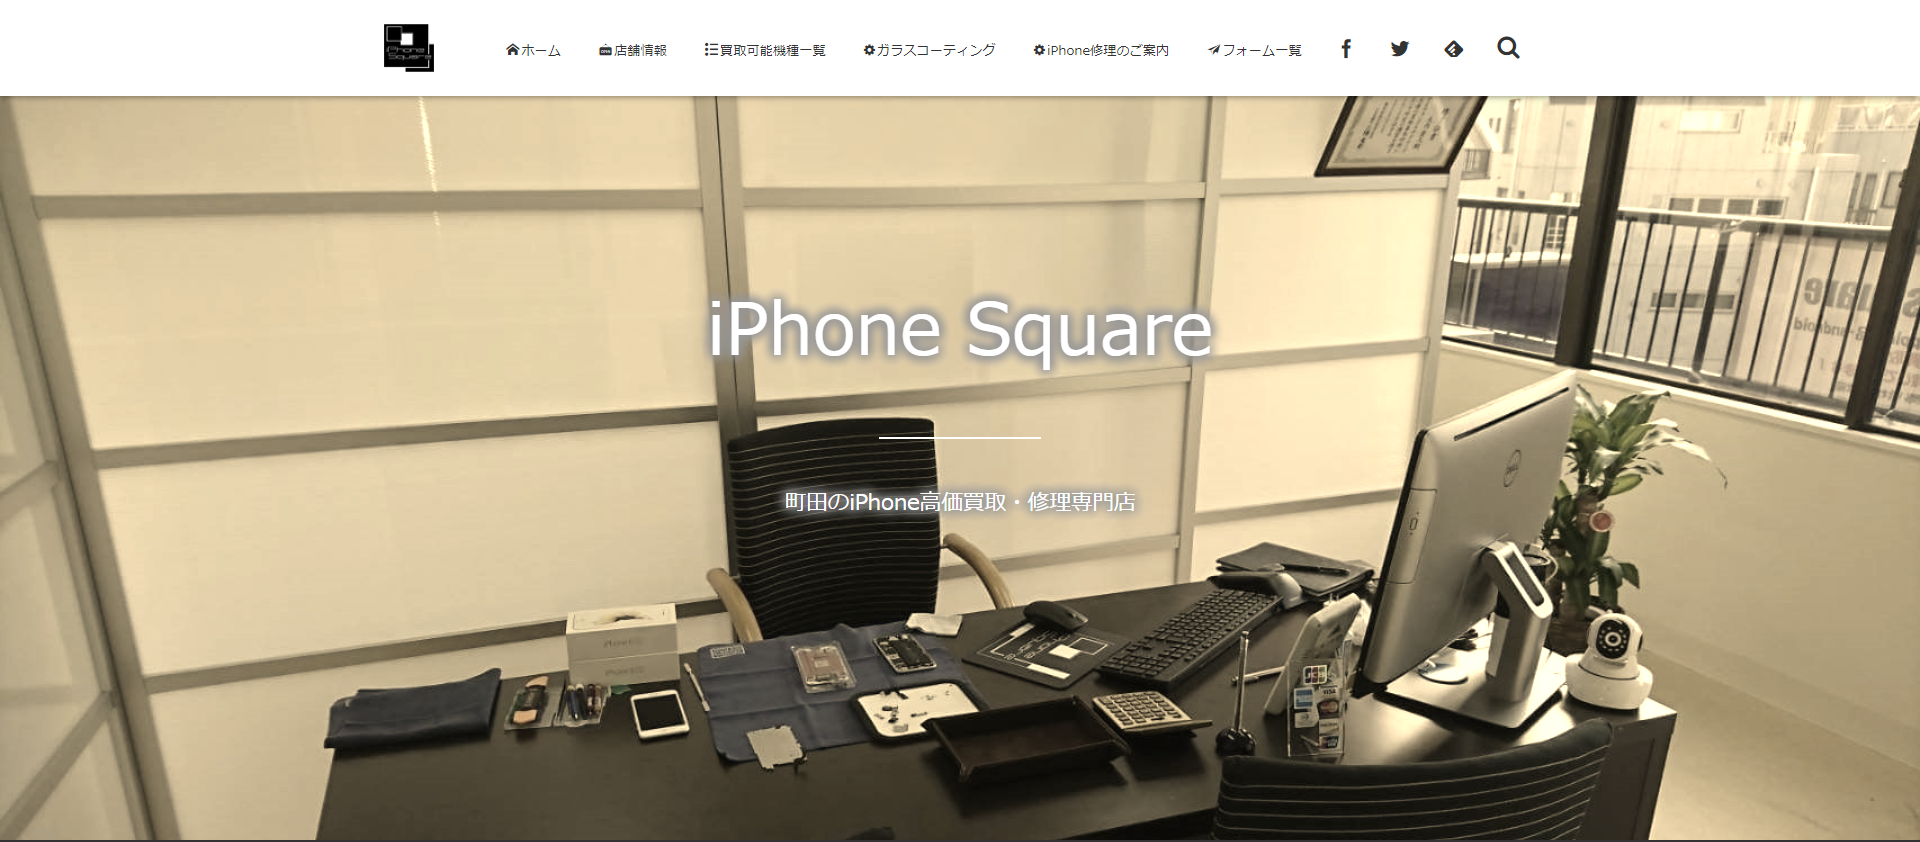 iPhone Square